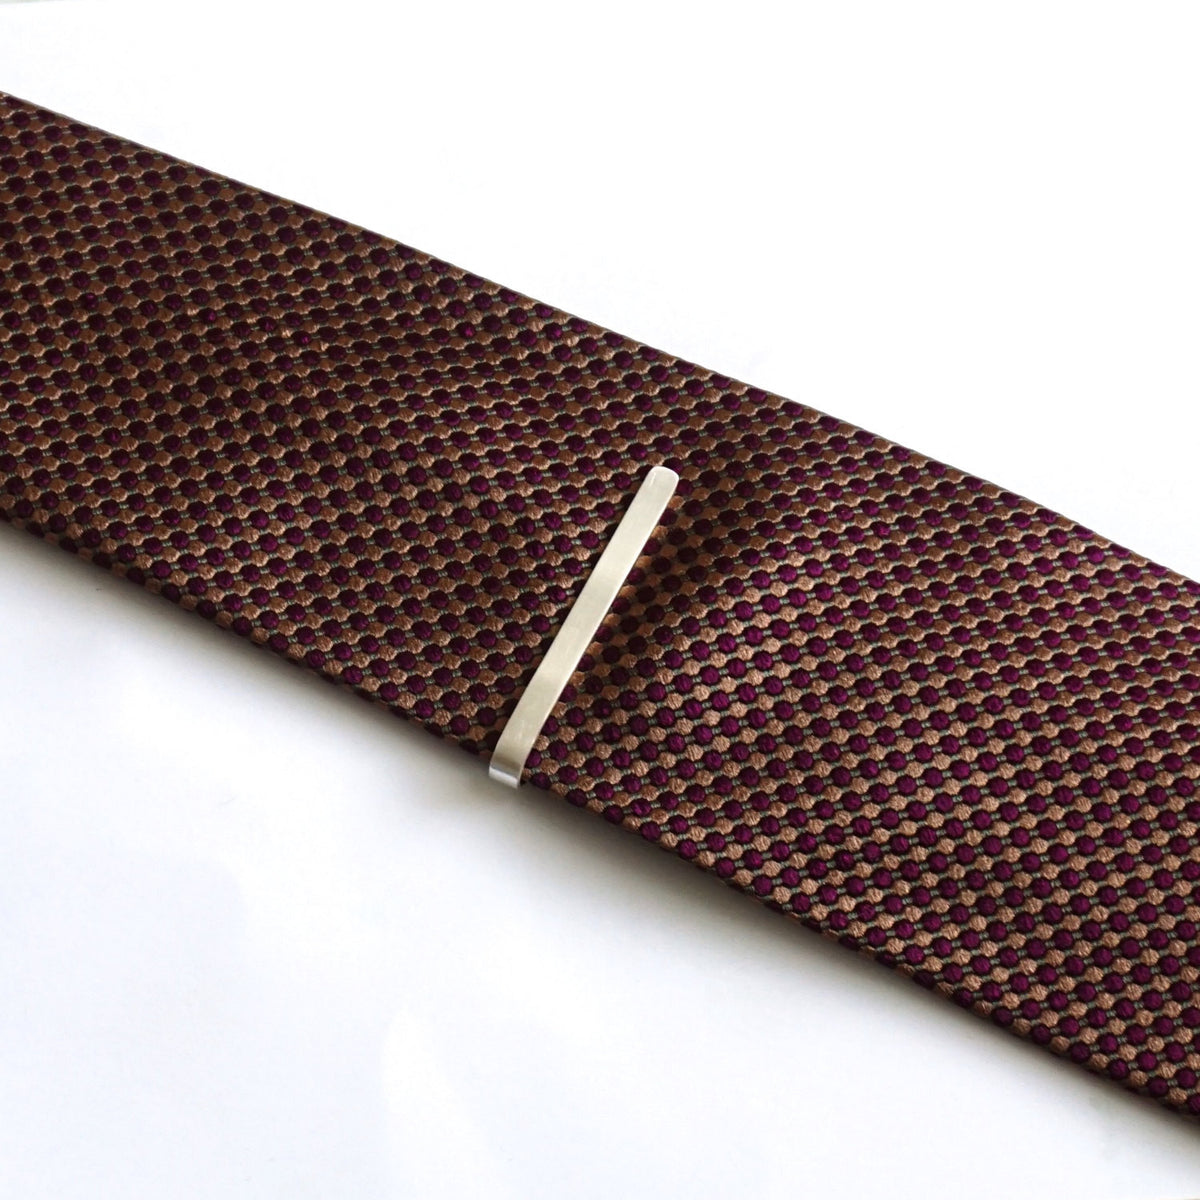 Classic 2.25" Sterling Silver Tie Clip - Simple Yet Elegant - 0226 - Virginia Wynne Designs